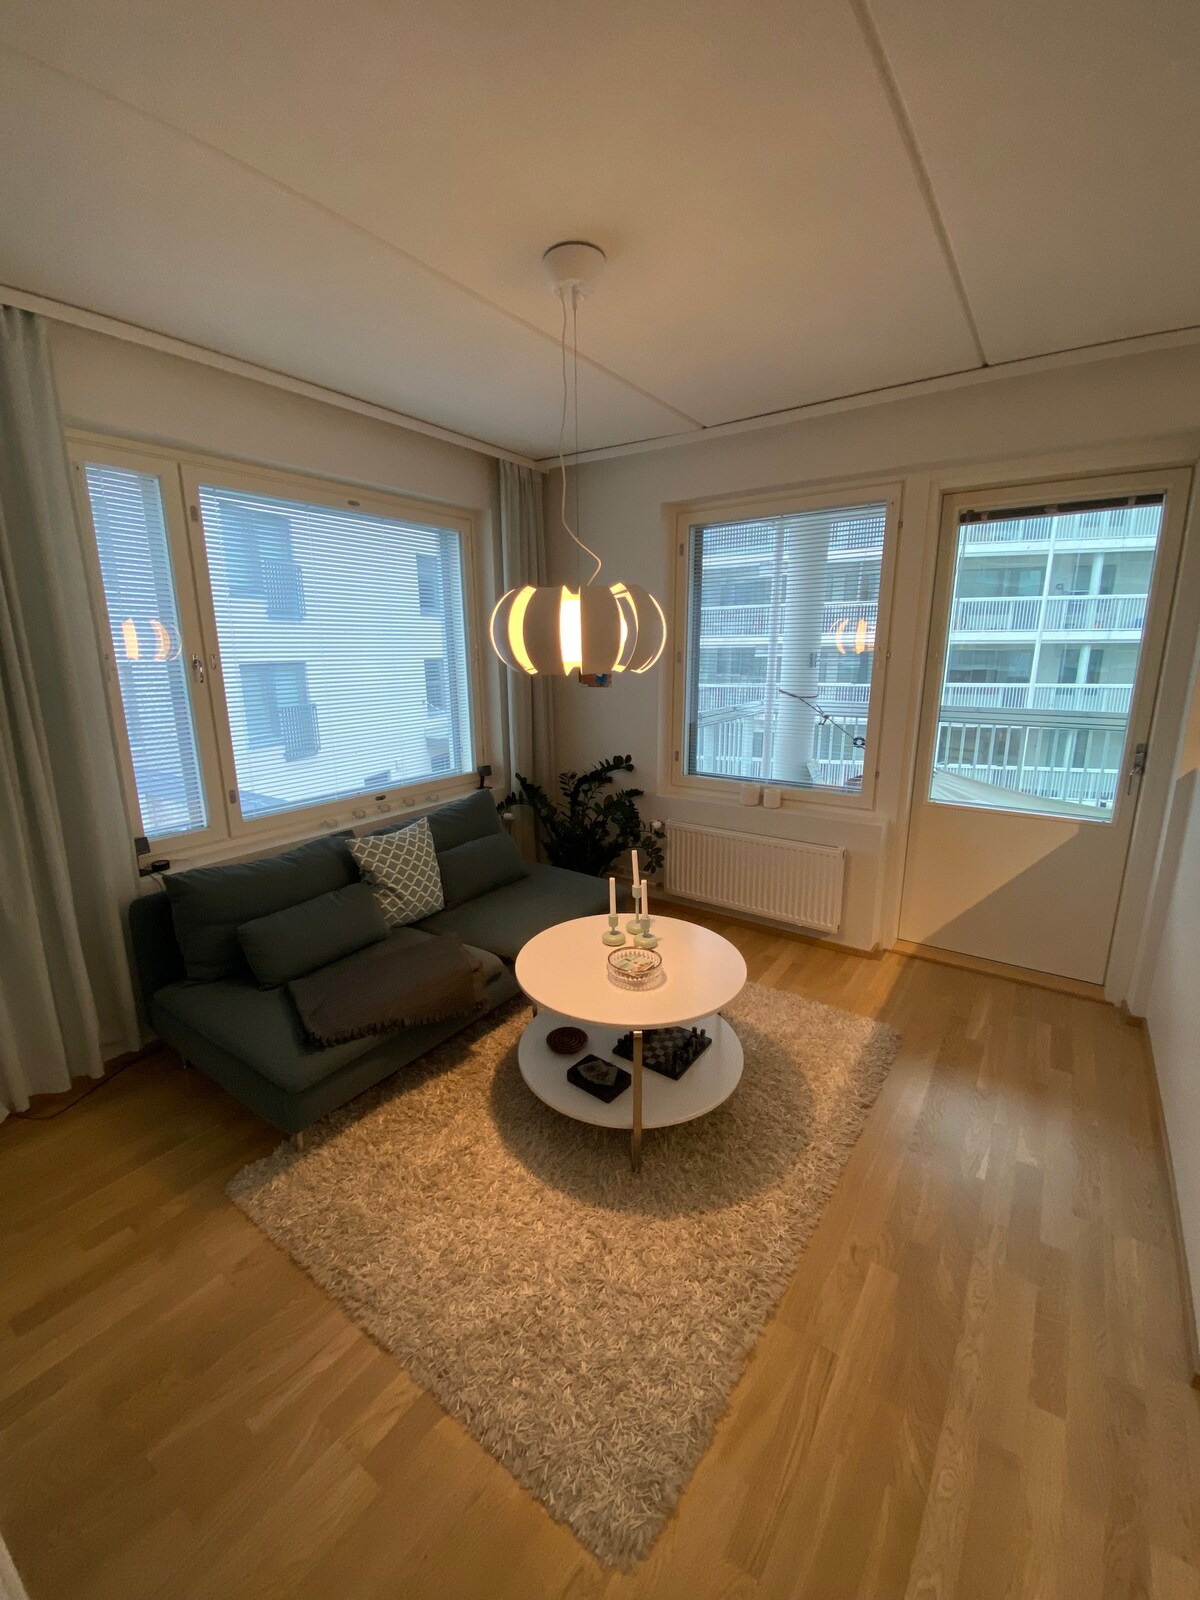 赫尔辛基机场附近的现代两卧公寓